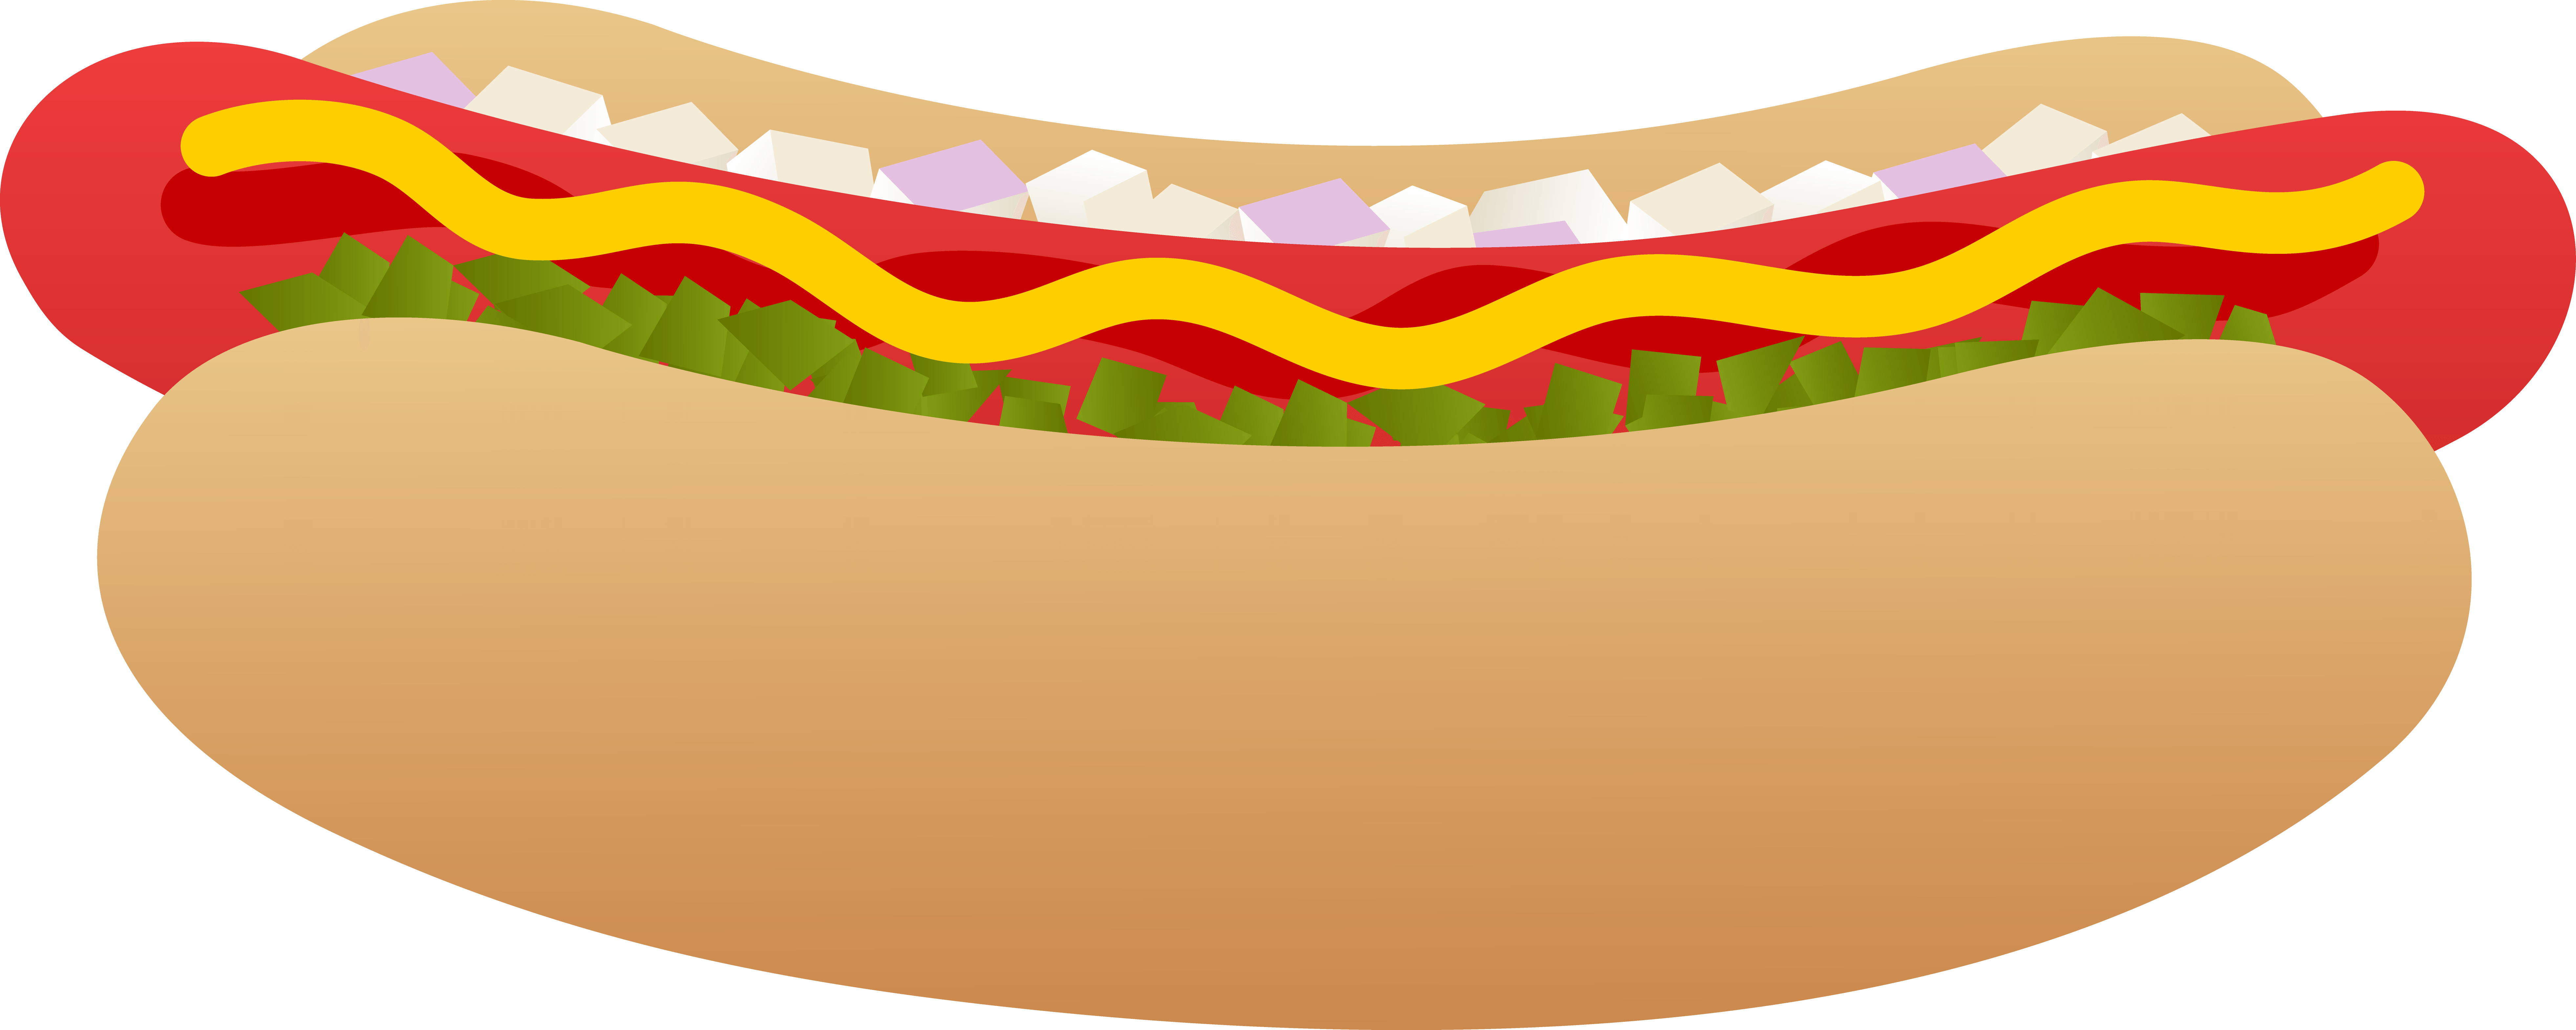 Bun - Clip Art Hot Dog (7846x3137)